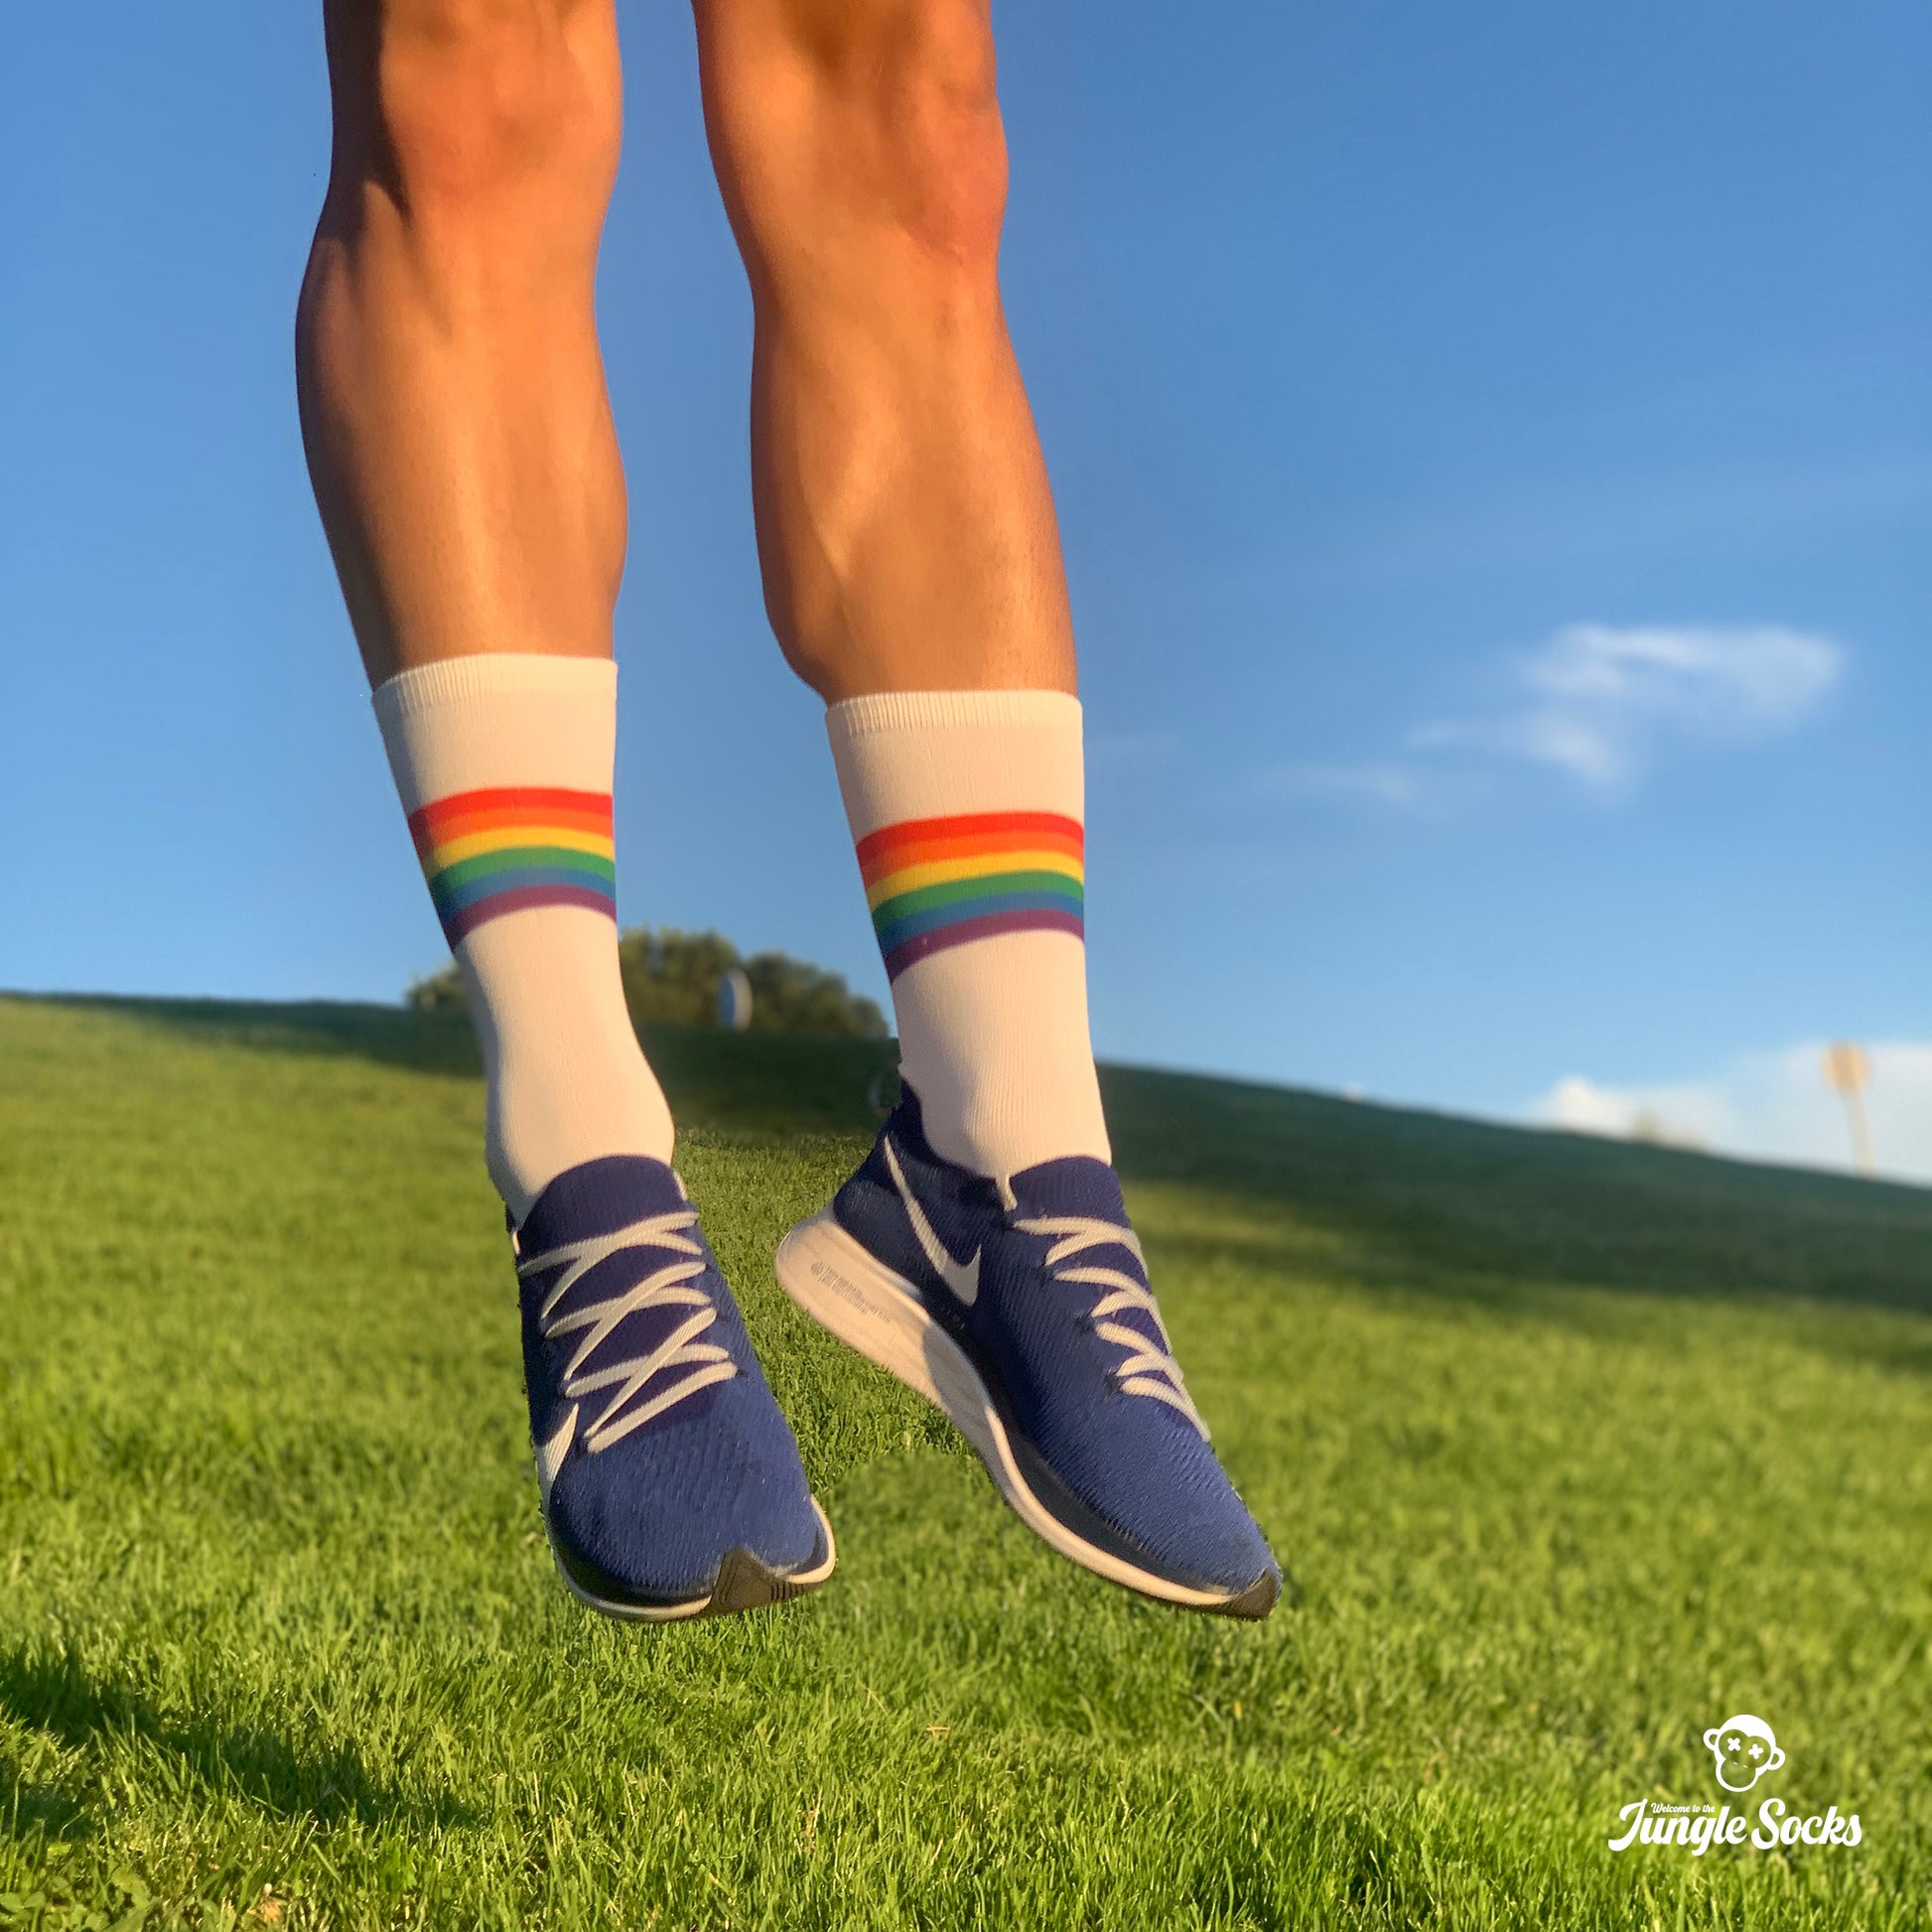 Hombre saltando con calcetines deportivos divertidos con la bandera del orgullo